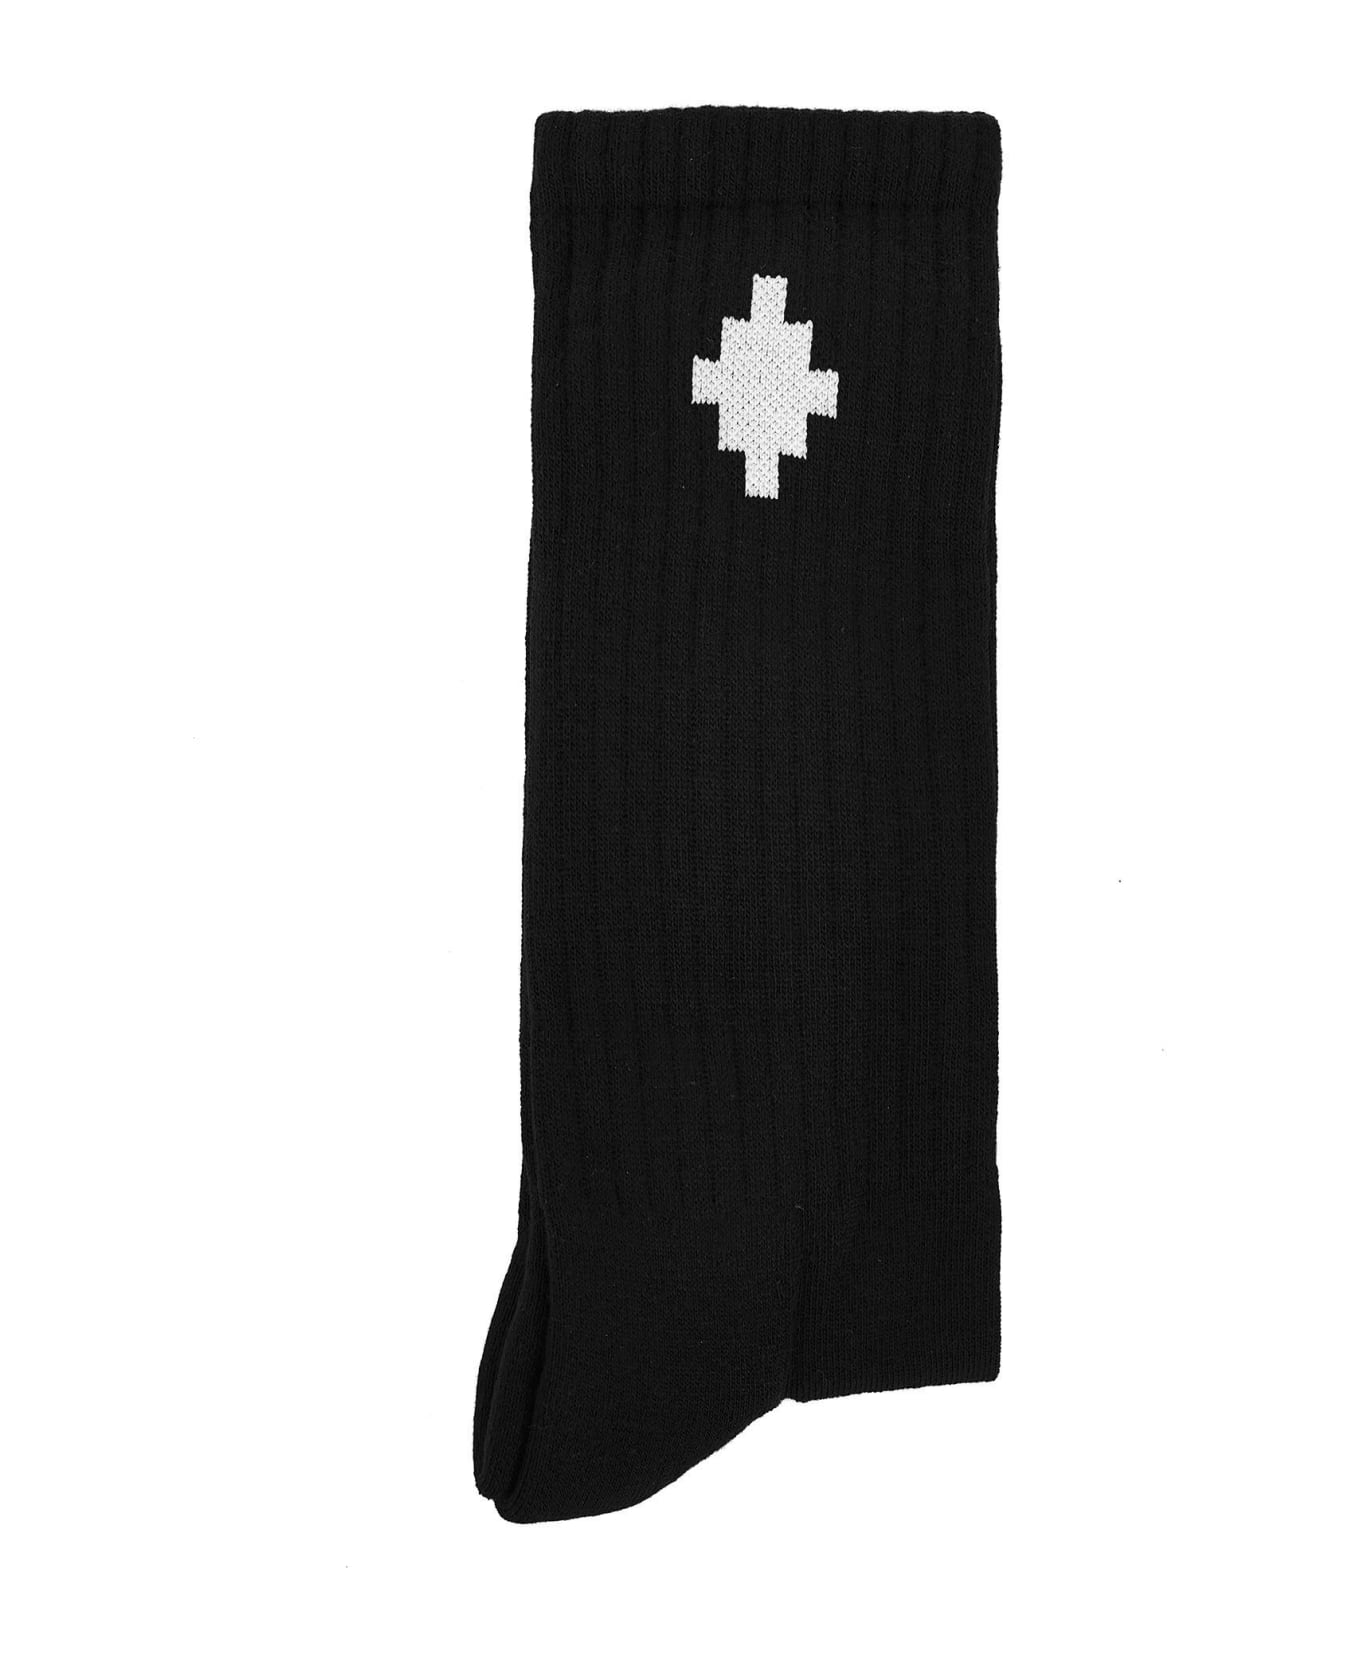 Marcelo Burlon Cross Socks - Black white